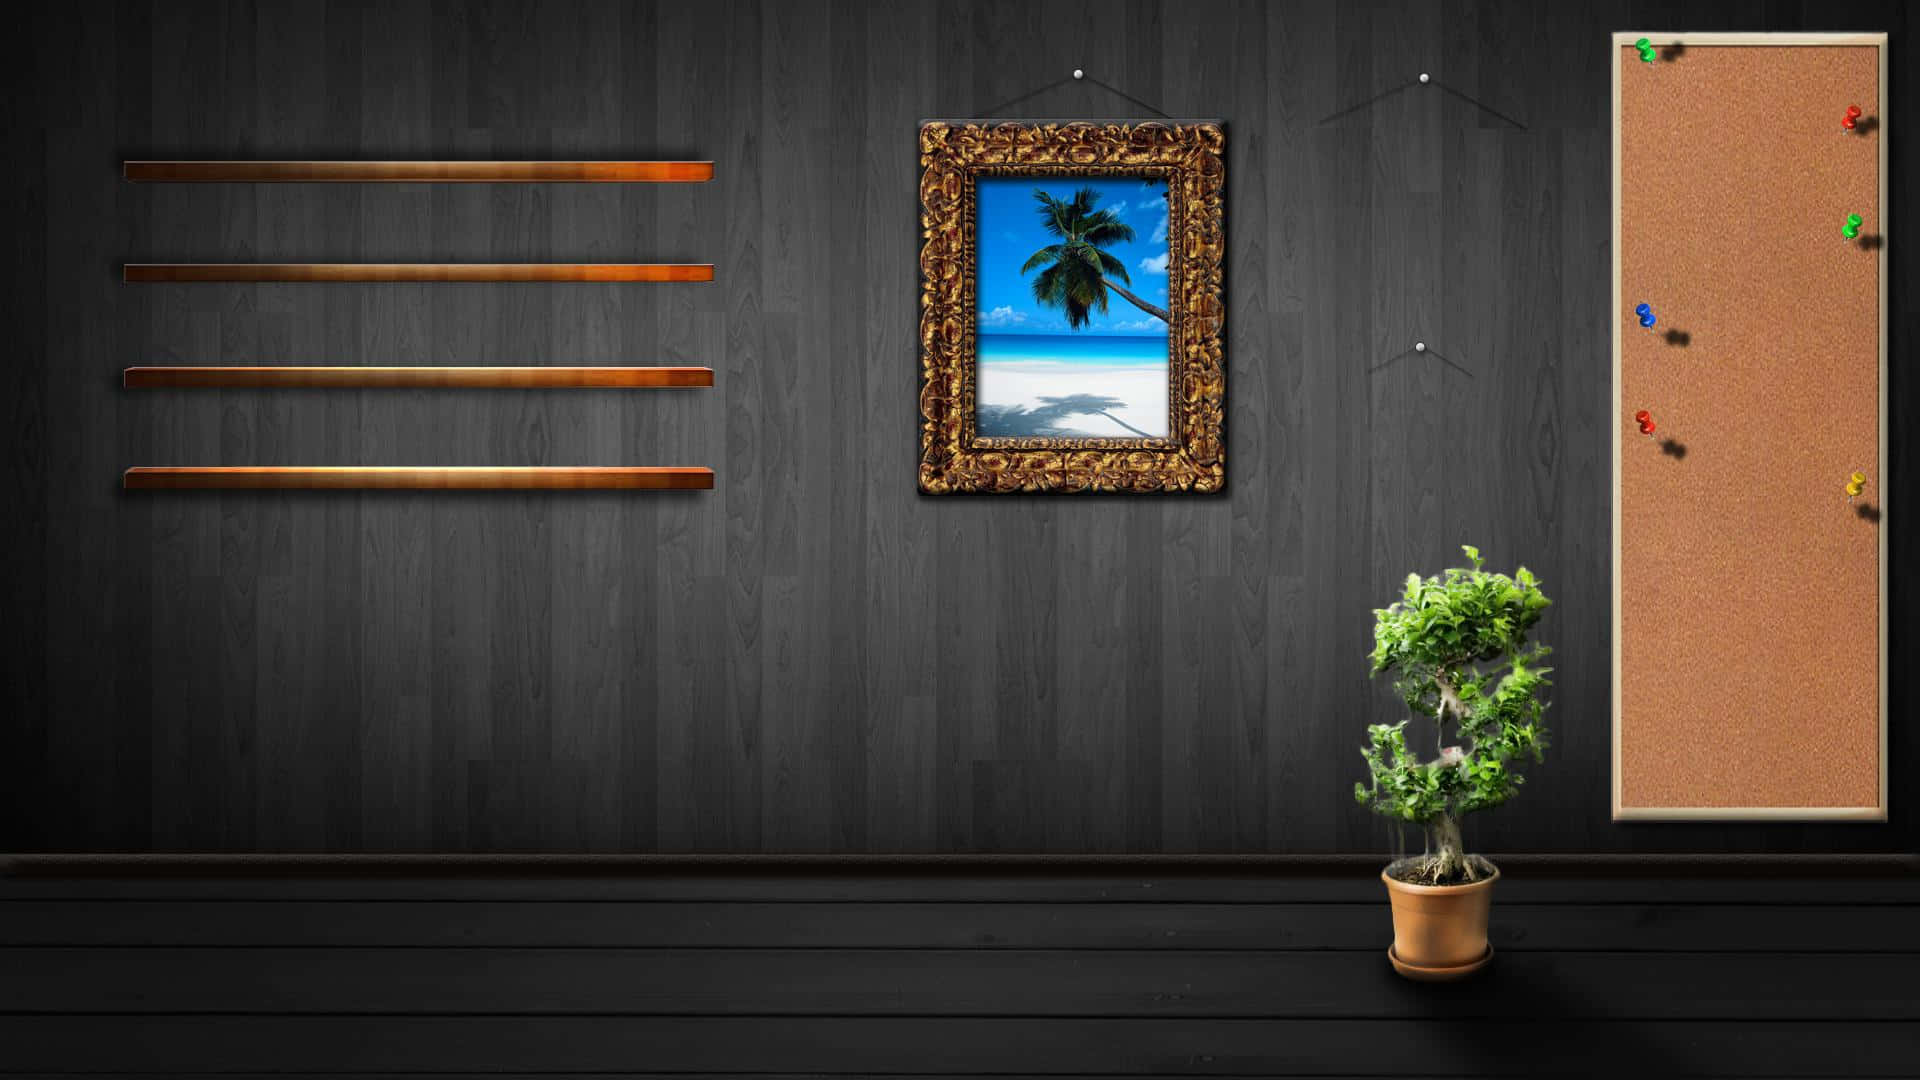 Einraum Mit Einer Pflanze Und Einem Bild An Der Wand.